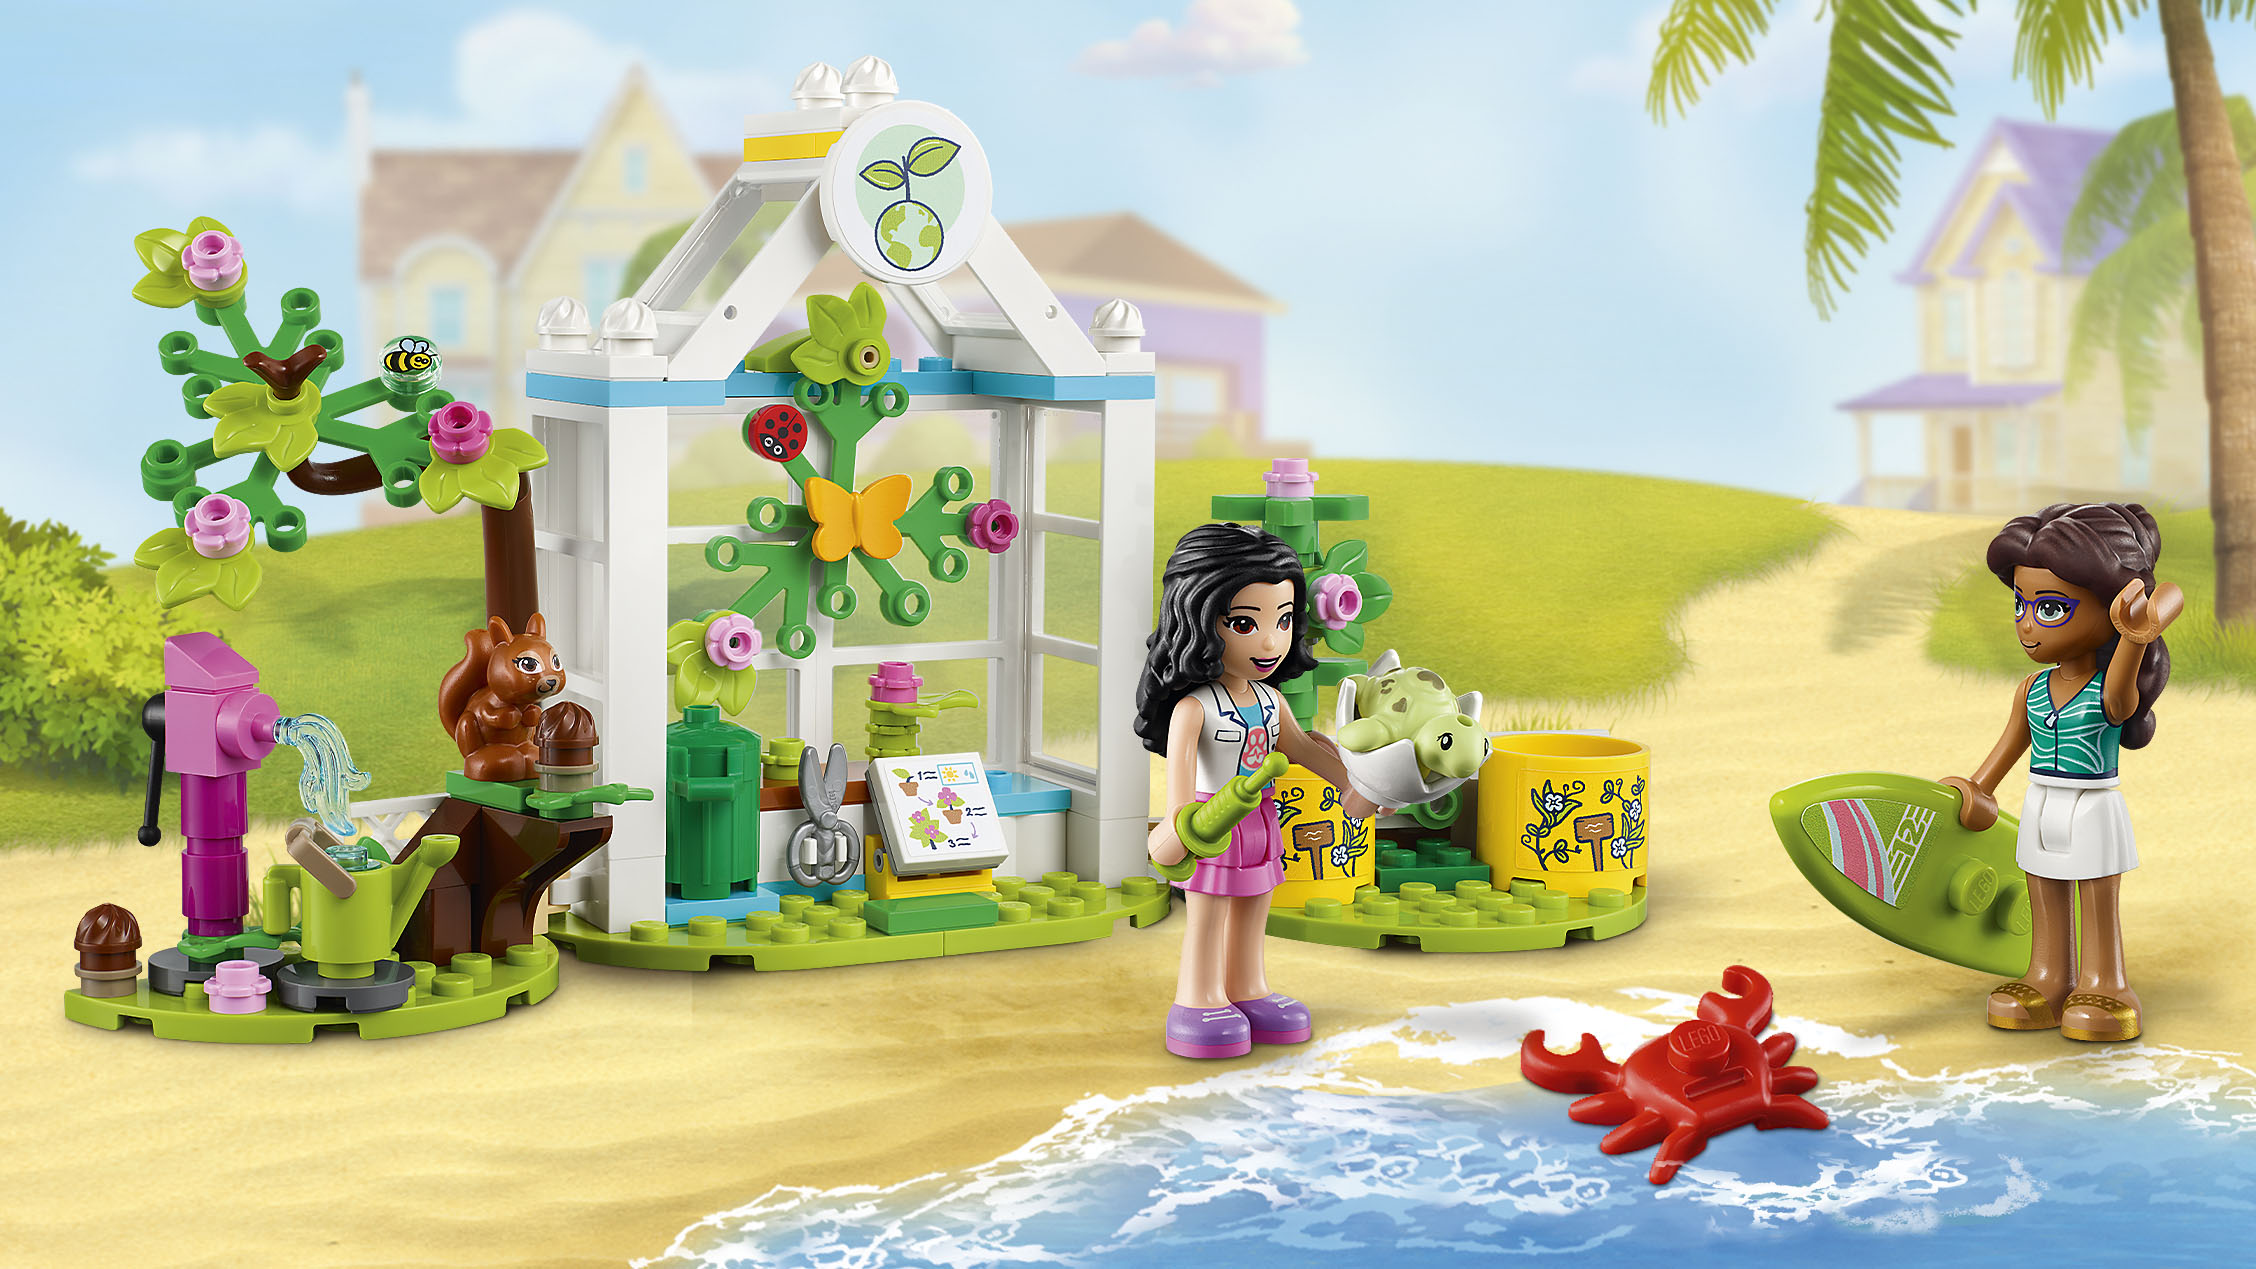 dyr R Layouten Hjælp med at beskytte de vilde dyr denne sommer! - LEGO.com for børn